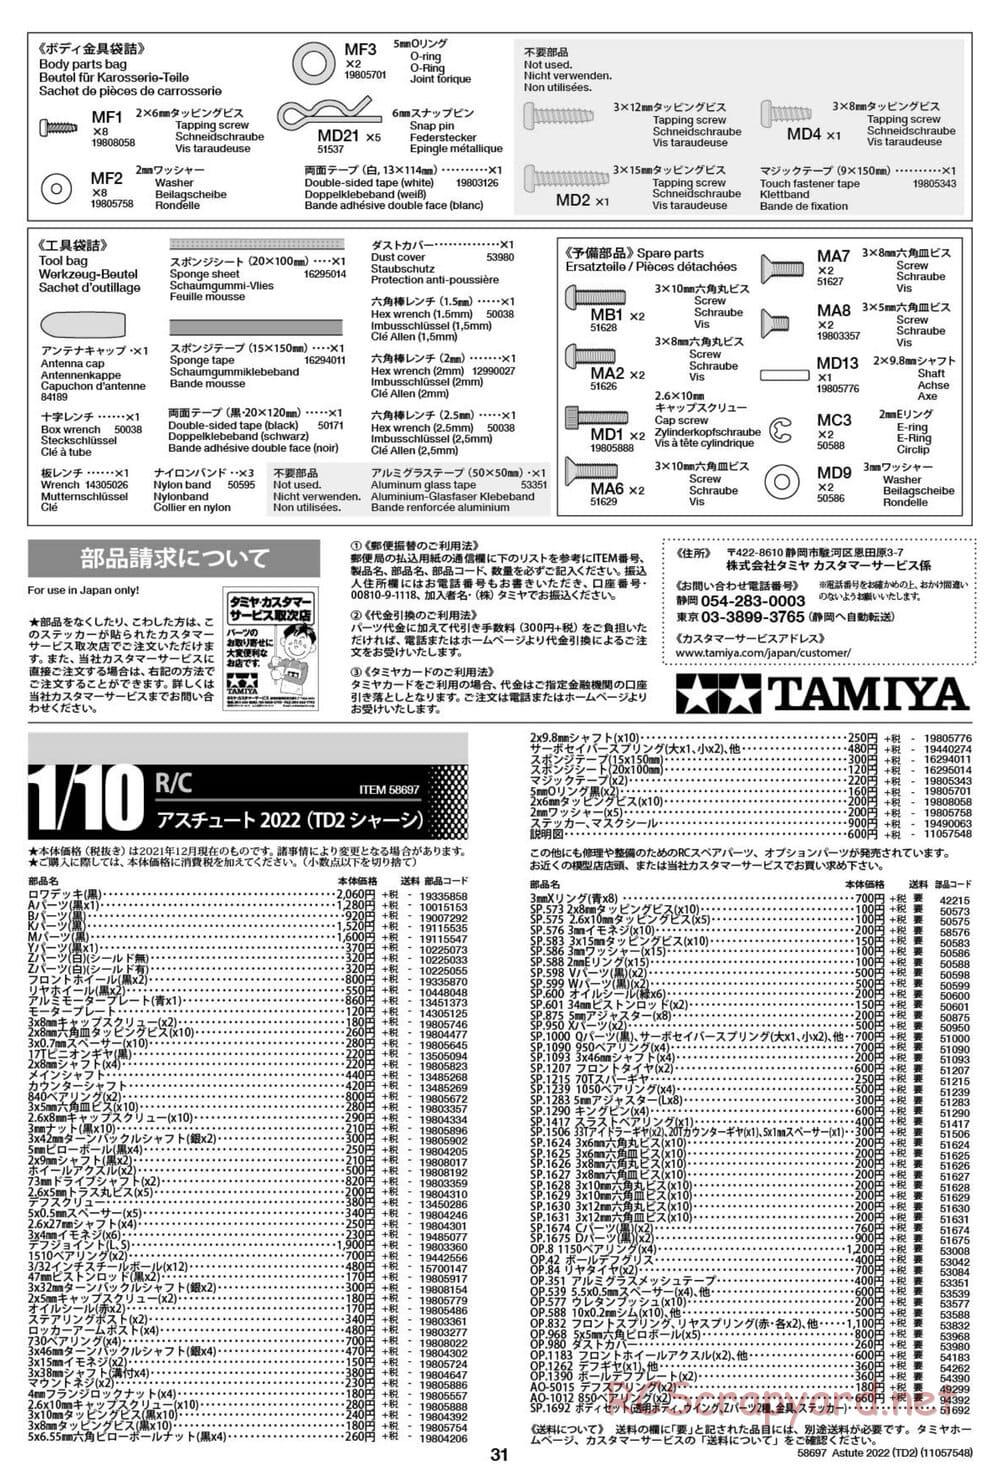 Tamiya - Astute 2022 - TD2 Chassis - Manual - Page 31